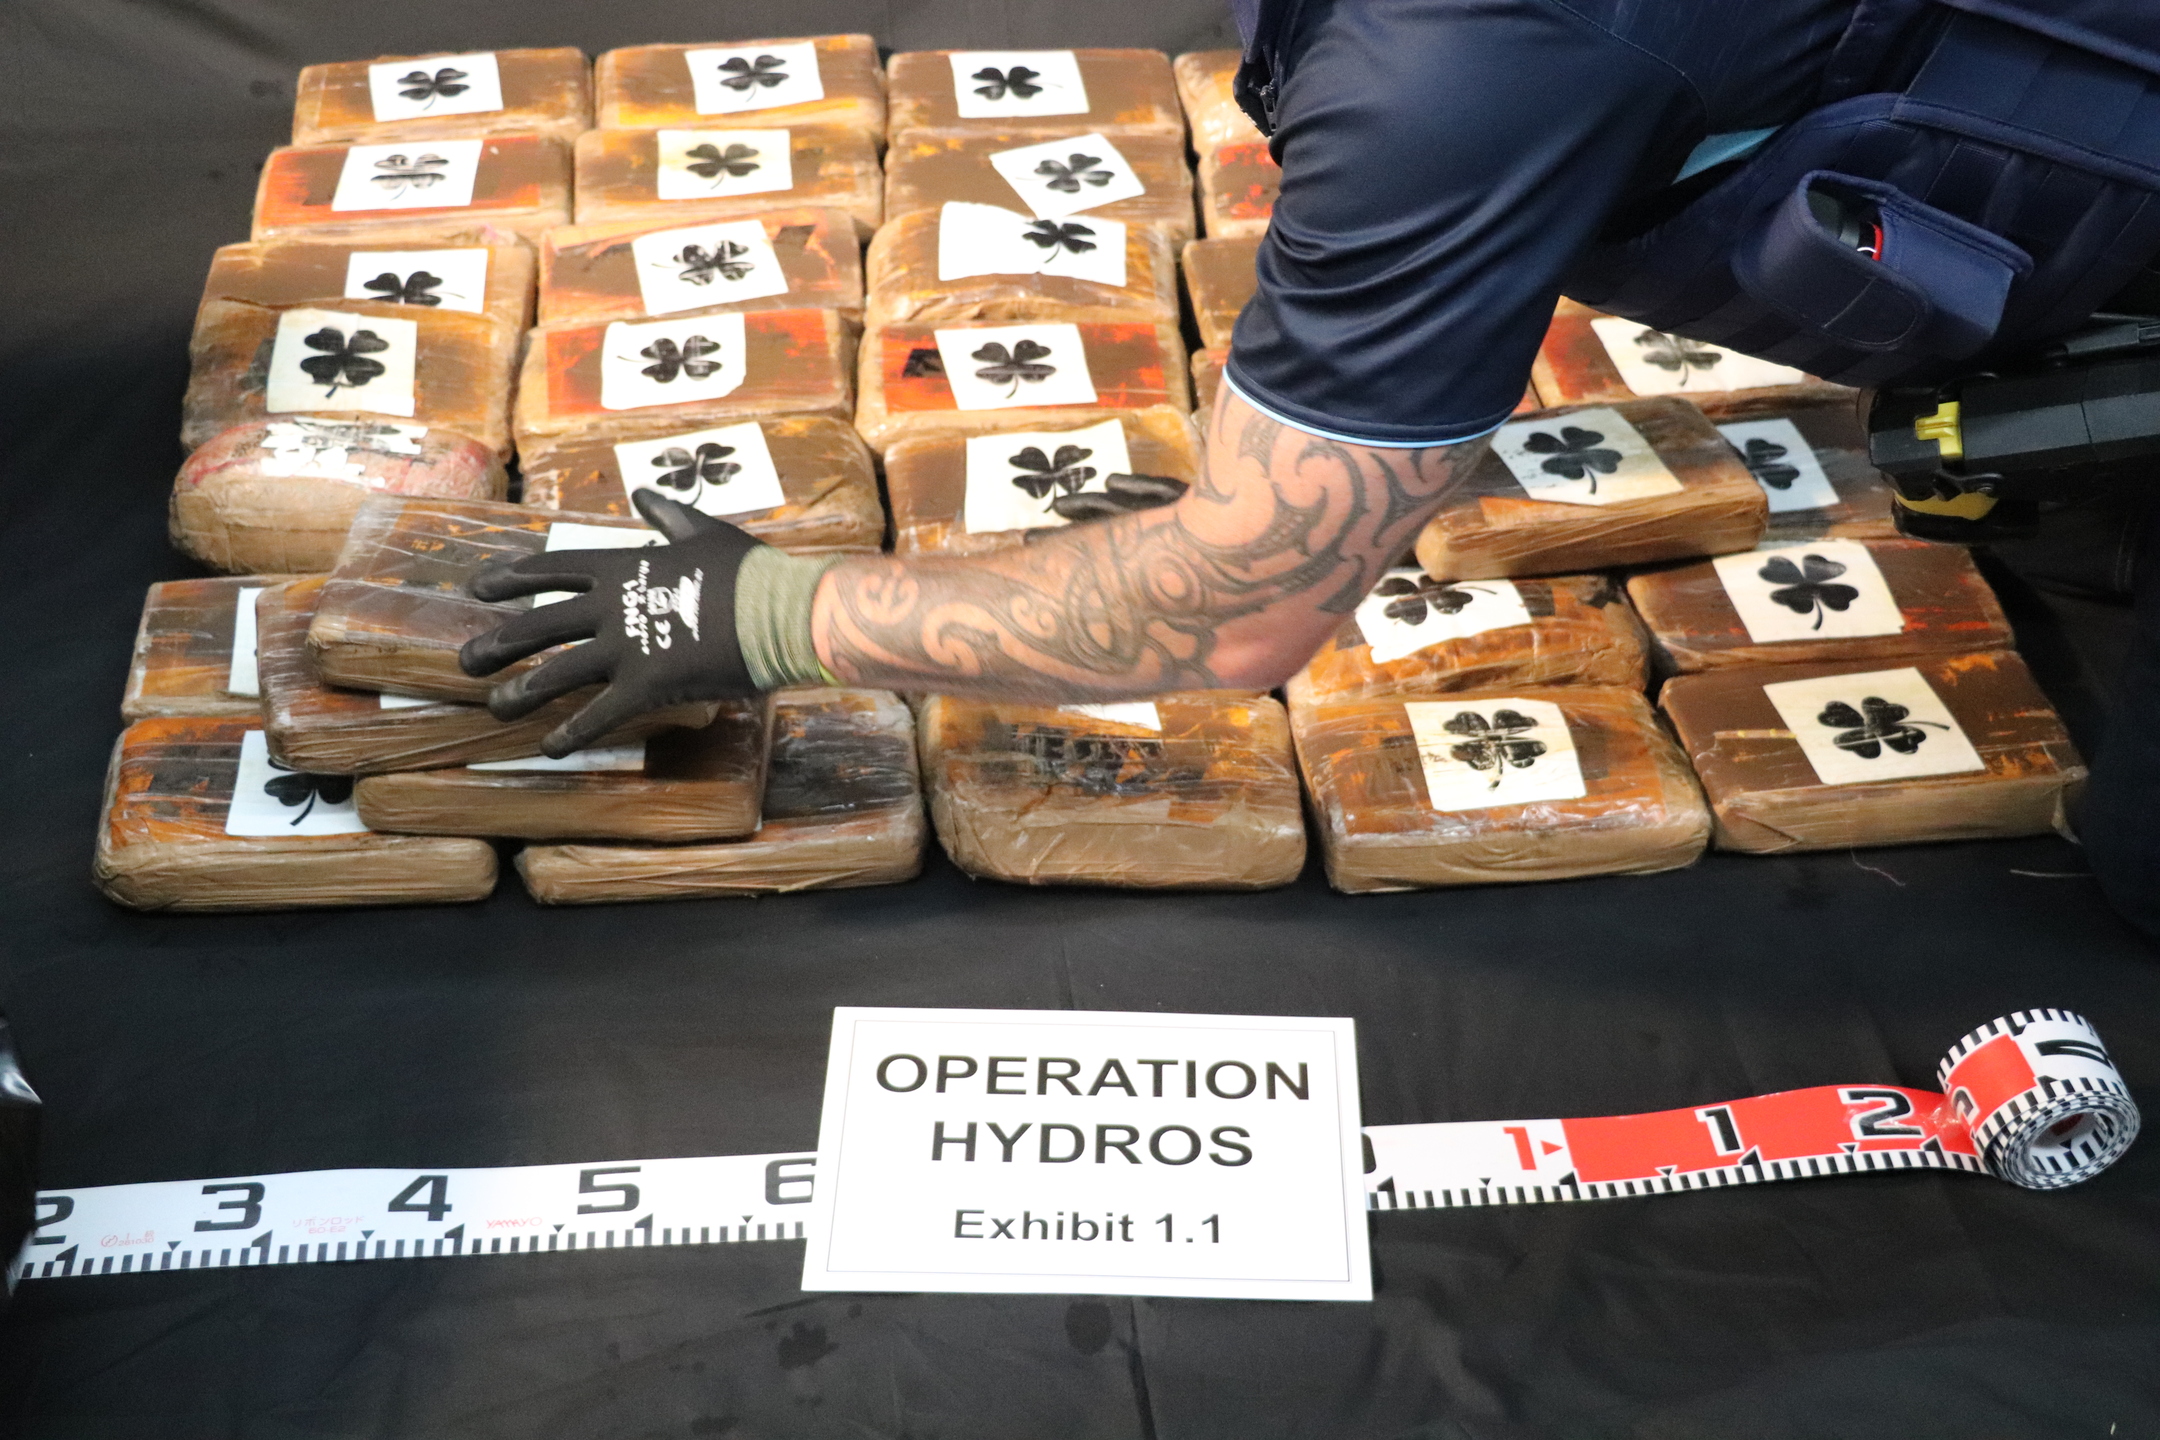 Cocaína recuperada do Oceano Pacífico tinha 'logos' diferentes, uma delas lembra um trevo de 4 folhas. Foto / Polícia da Nova Zelândia